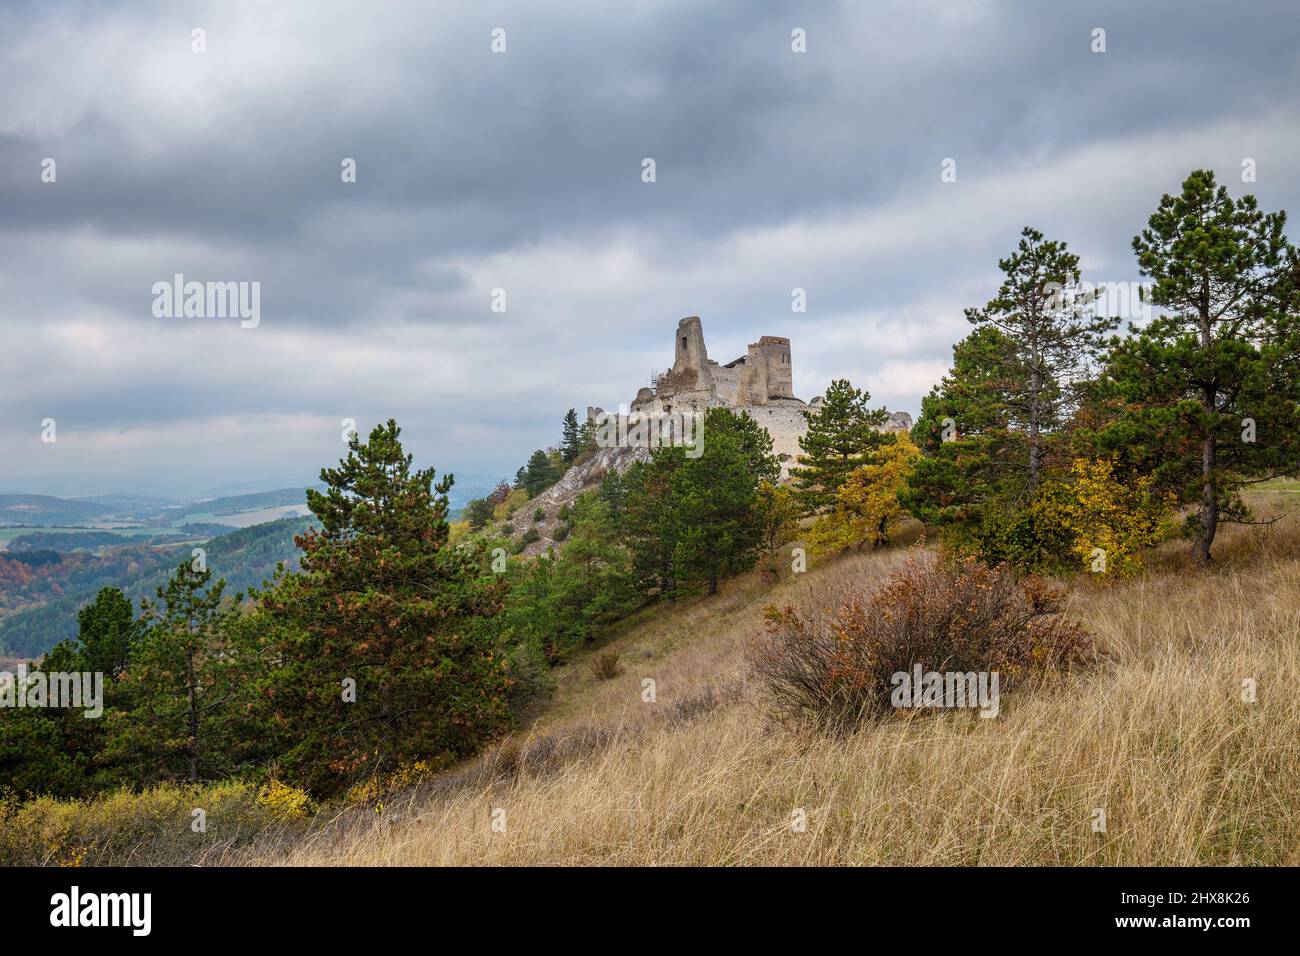 Château de Cachtice avec paysage environnant en automne, Slovaquie, Europe. Banque D'Images